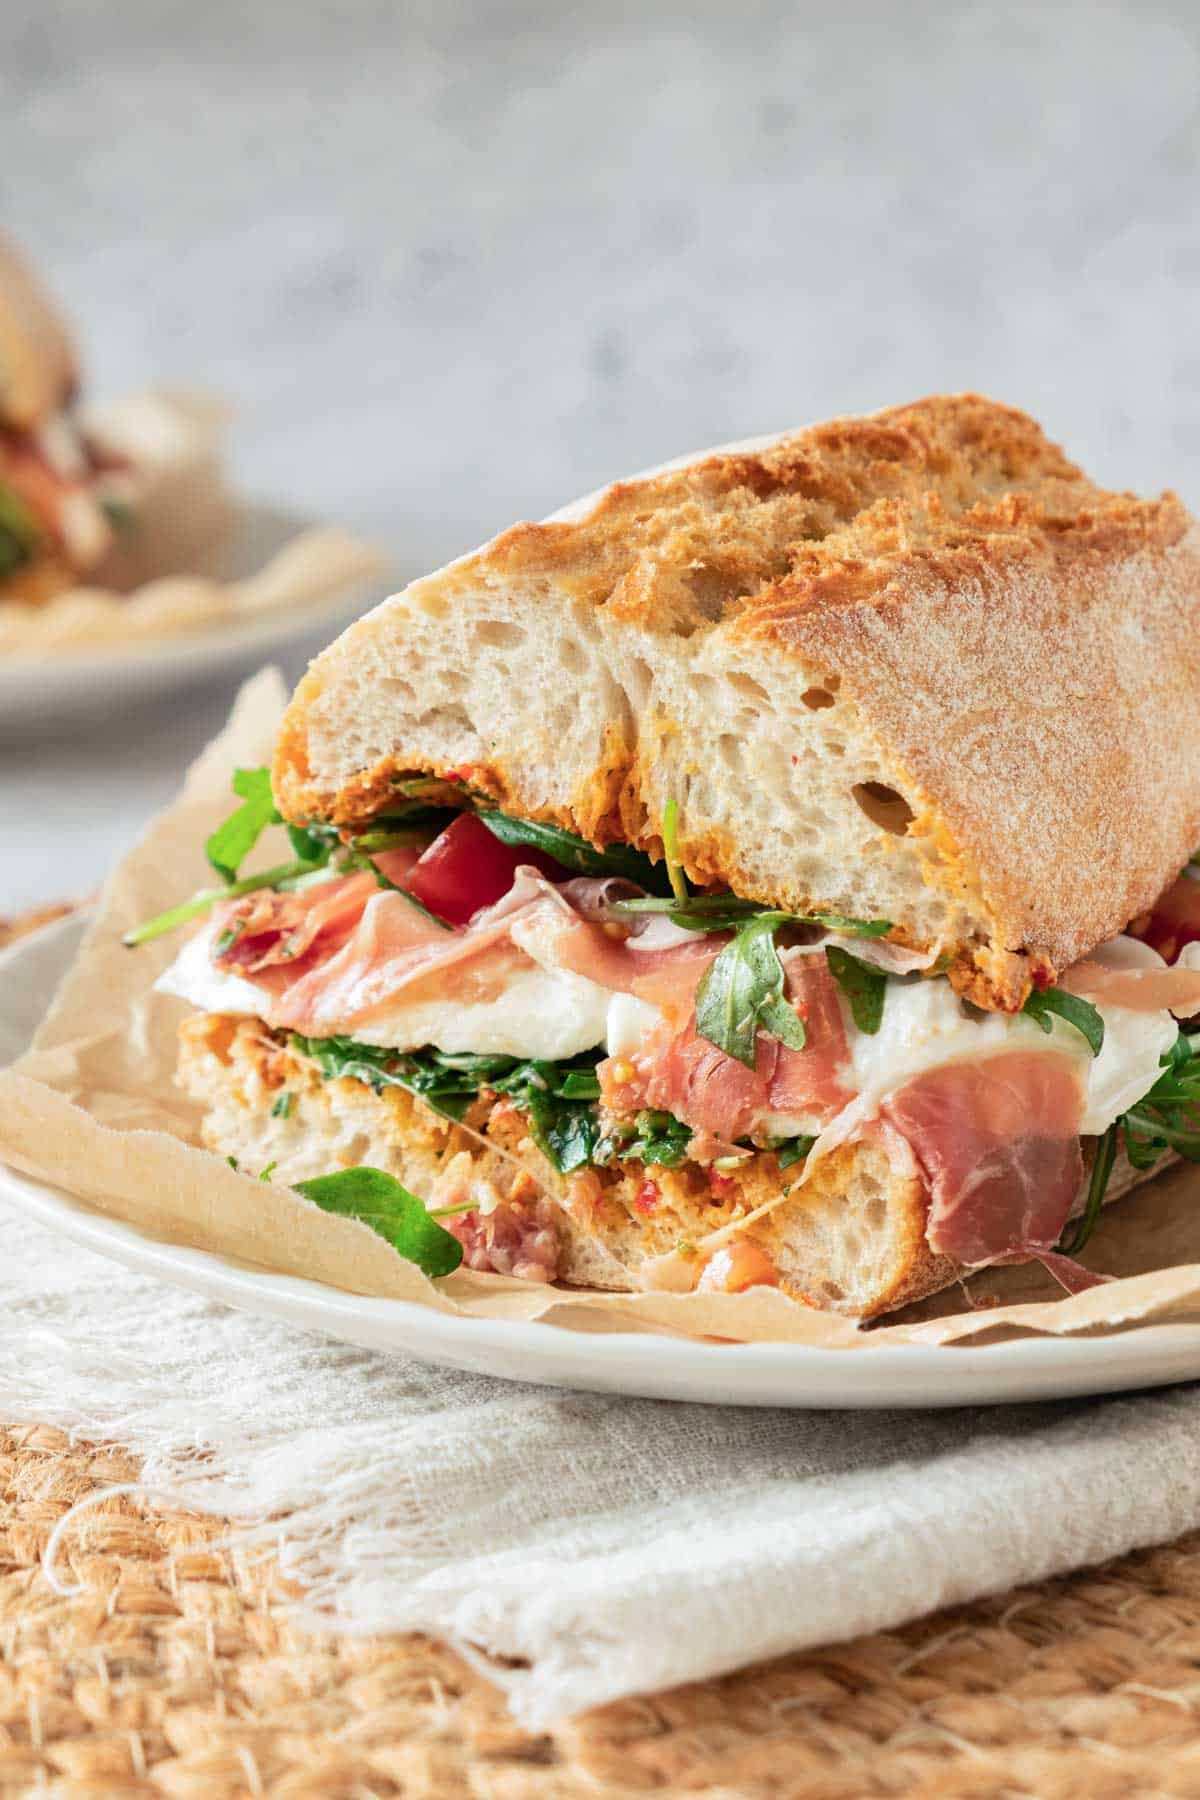 A fresh sandwich with prosciutto, arugula, and sun-dried tomatoes on ciabatta bread.